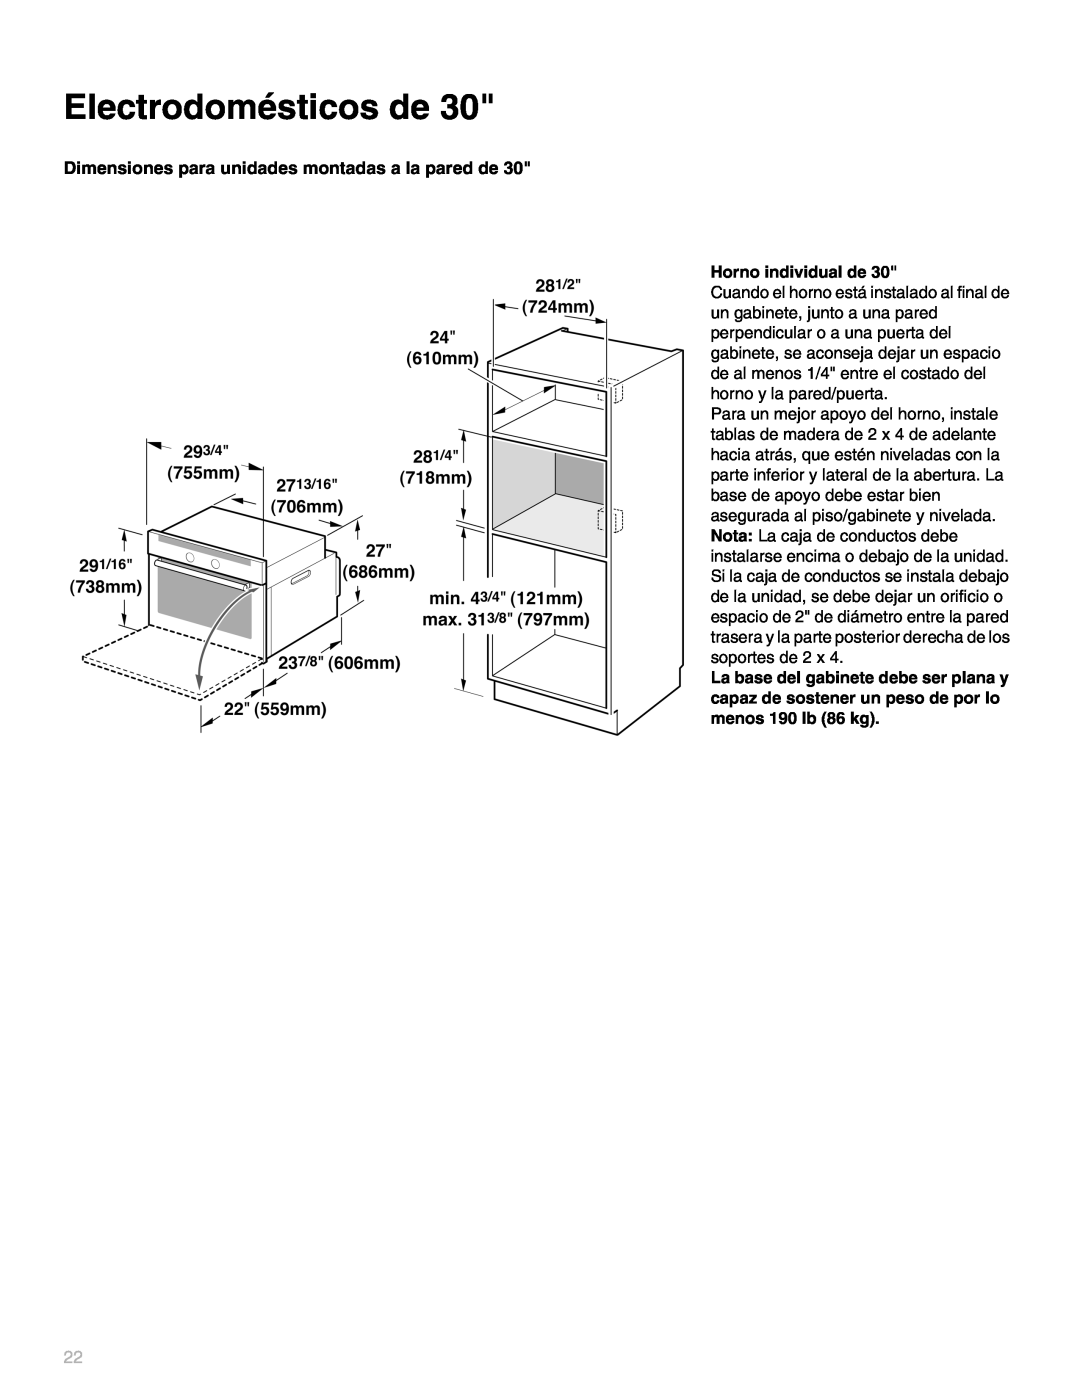 Thermador MEW301, MEMW301, M271 Electrodomésticos de, Dimensiones para unidades montadas a la pared de, Horno individual de 